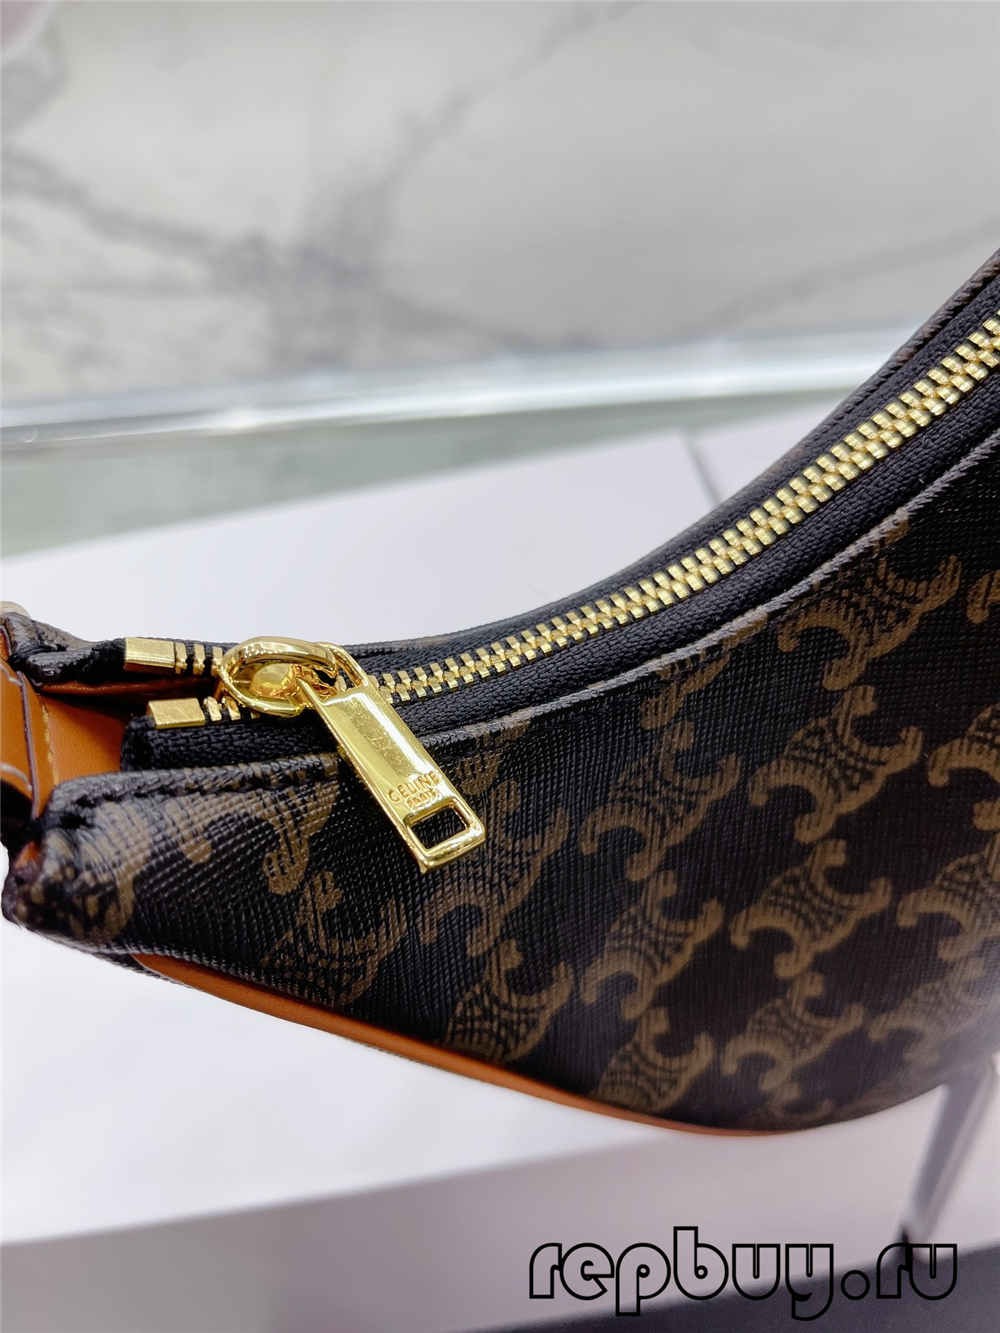 Celine Ava Labākās kvalitātes reprodukcijas somas (jaunākā 2022. gada versija)-Labākās kvalitātes viltotās Louis Vuitton somas tiešsaistes veikals, dizaineru somas kopija ru